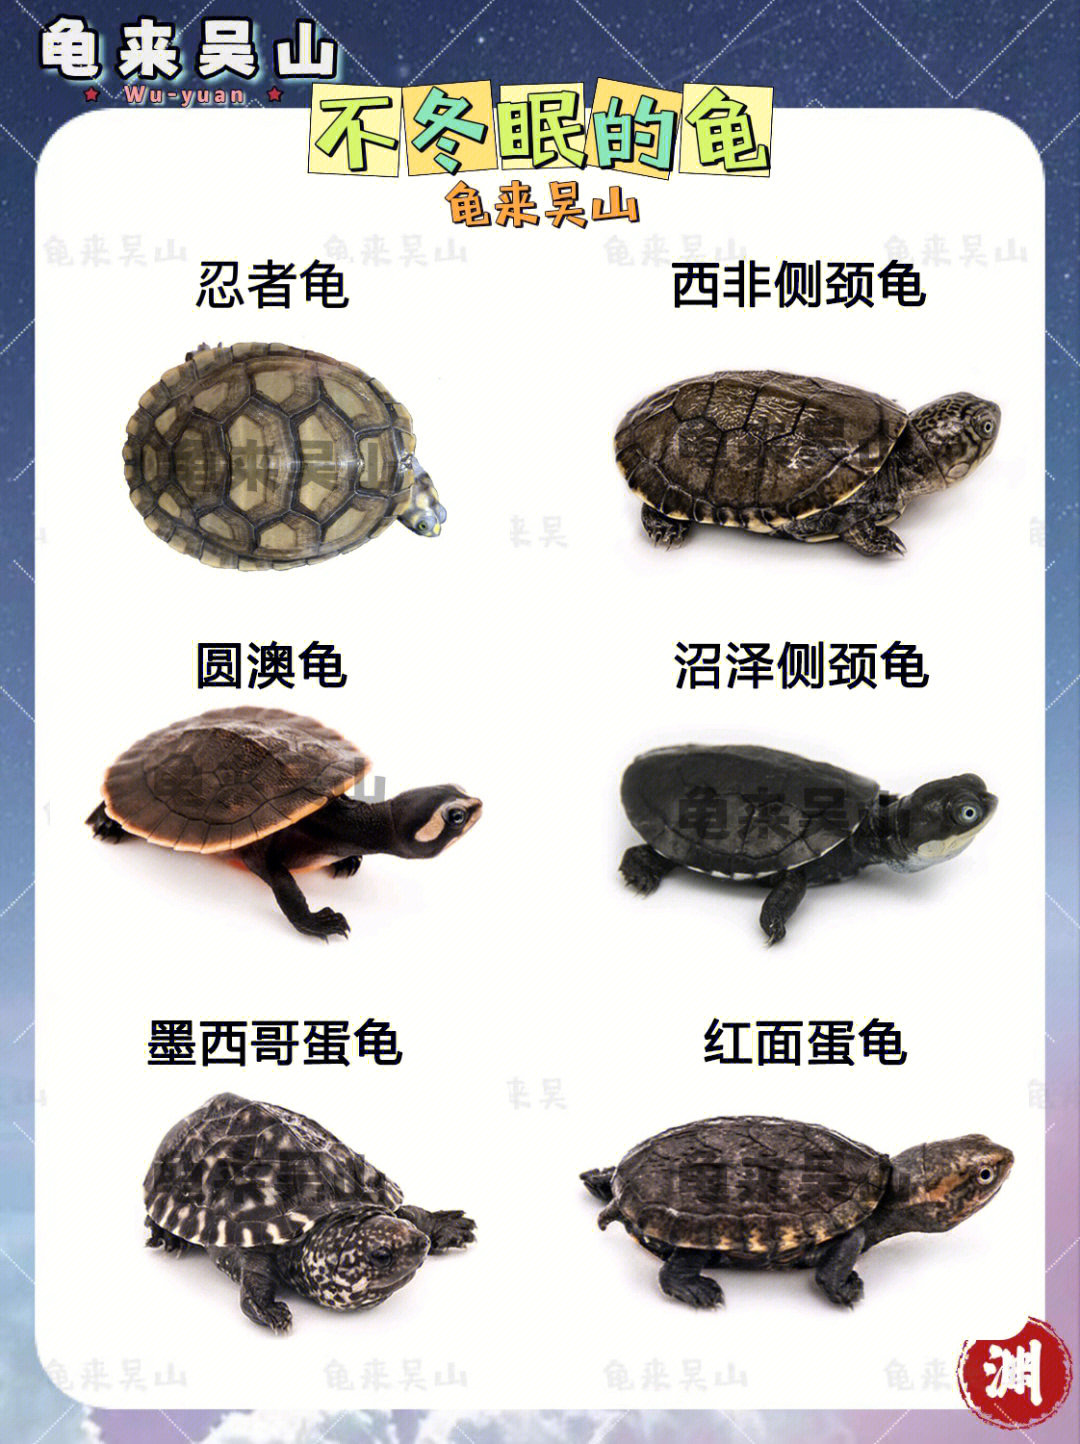 乌龟的种类及图片大全图片